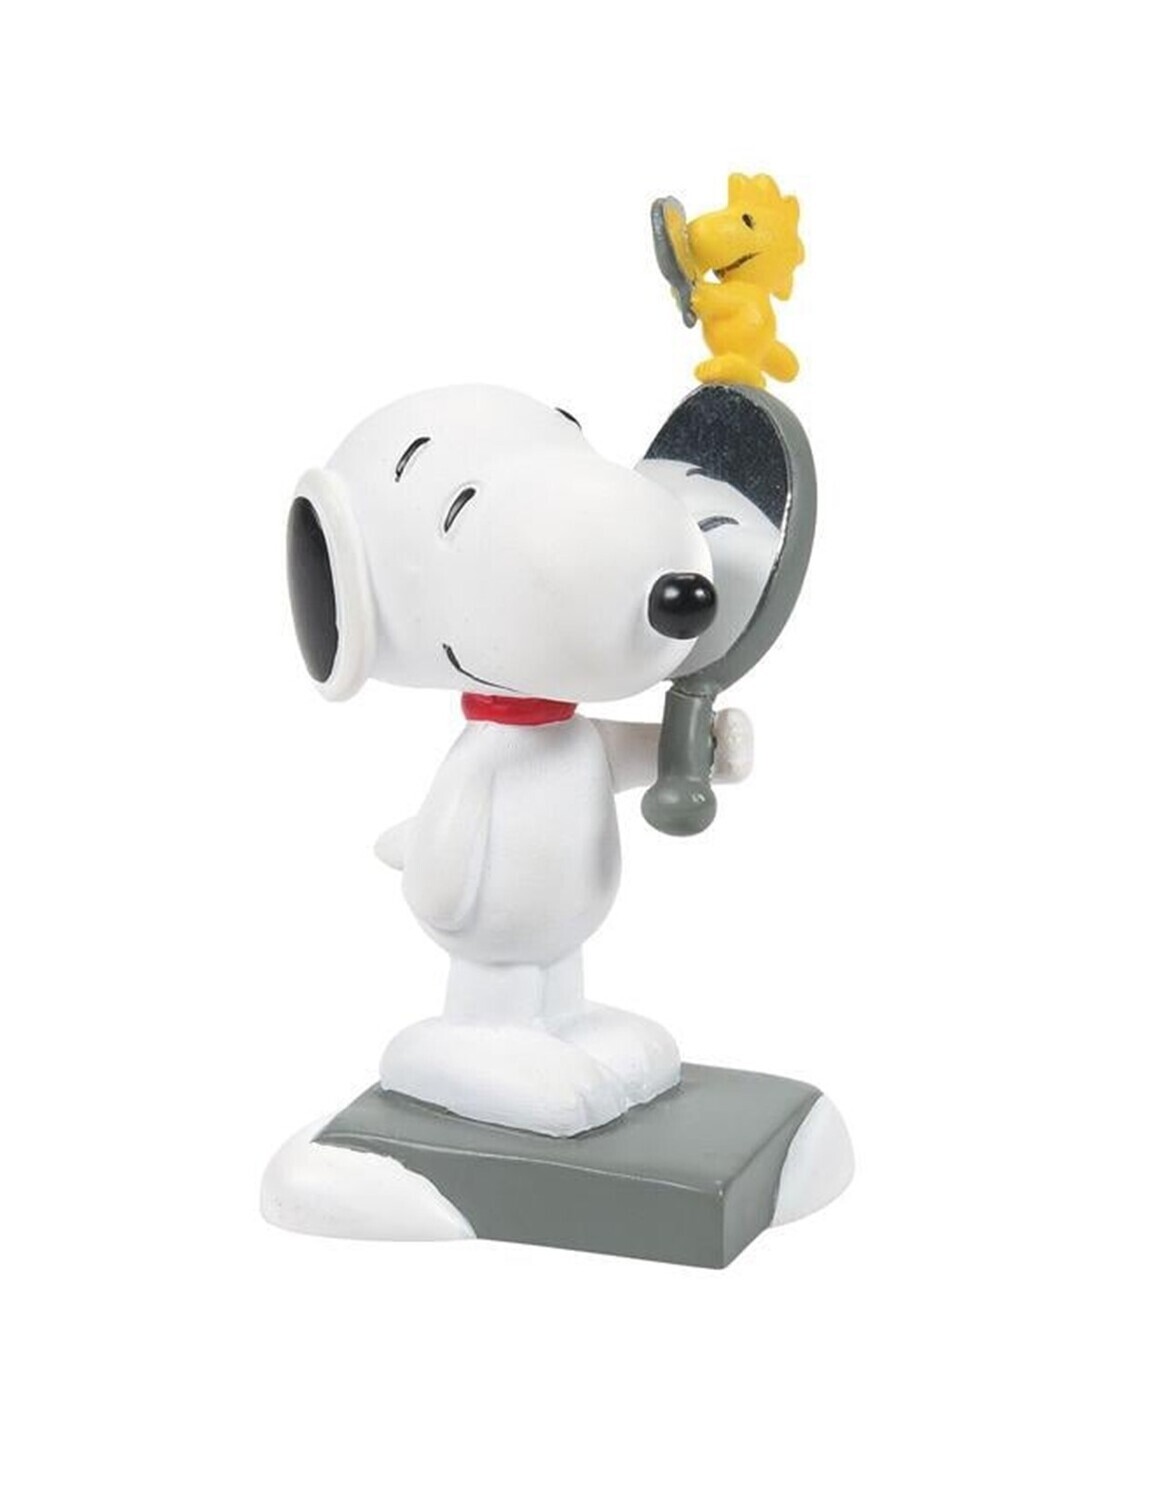 Department 56 Peanuts Village "We're Looking Good" Snoopy & Woodstock Figurine (6007736)